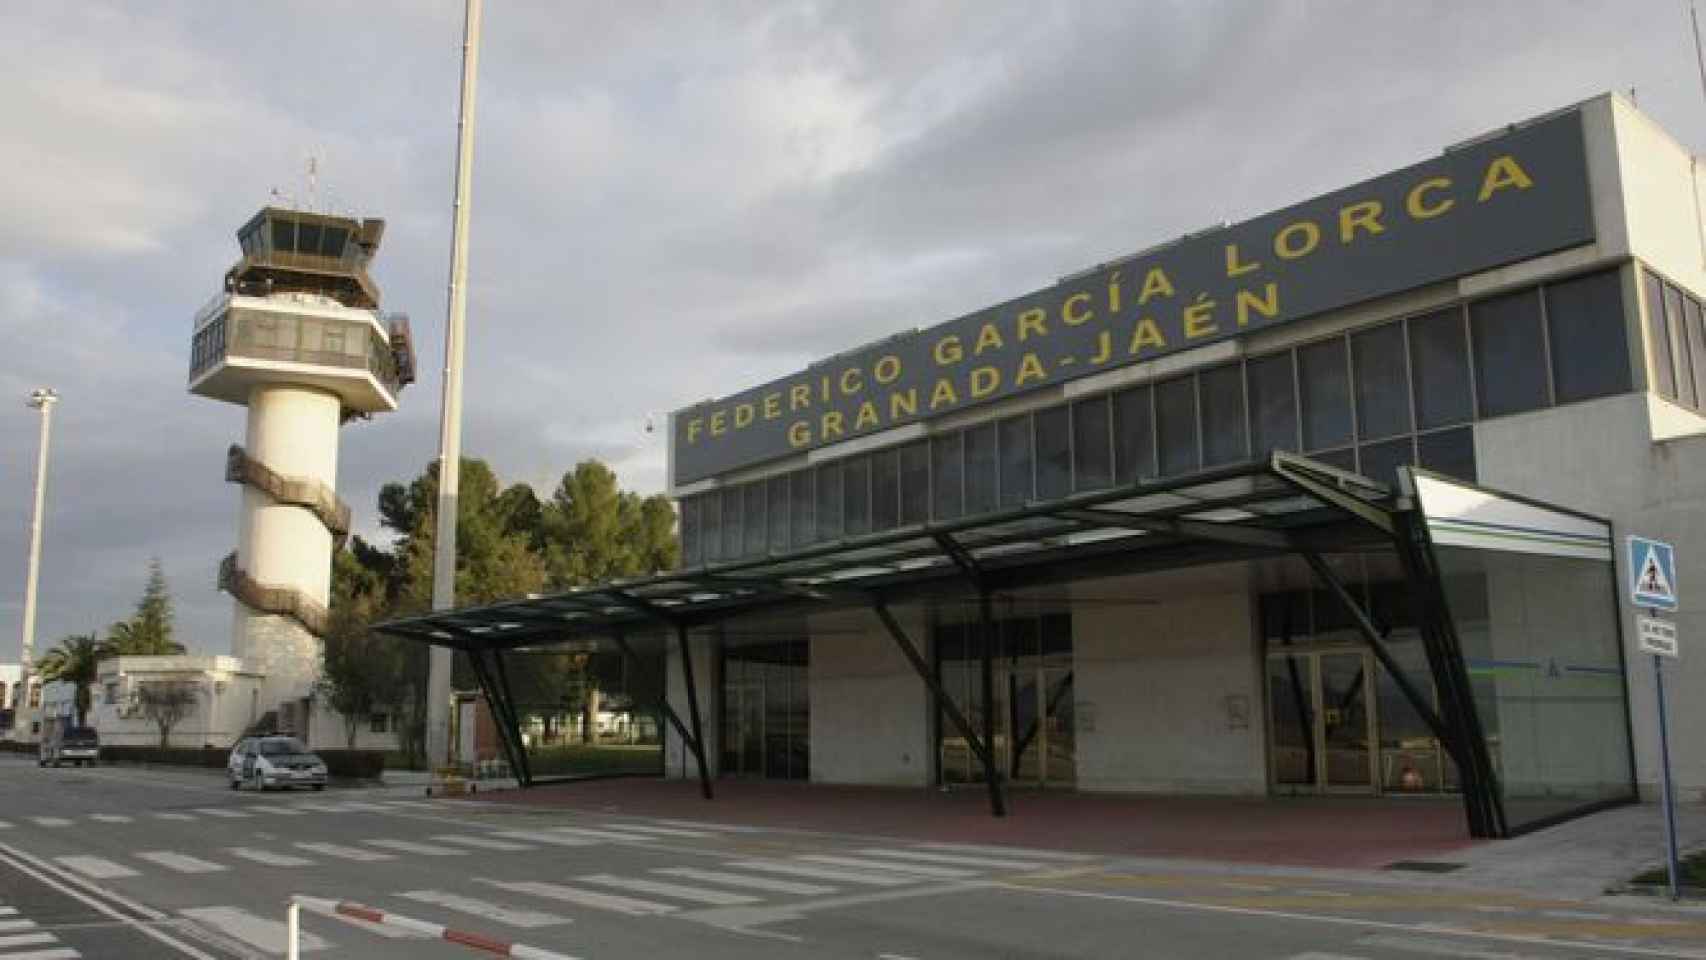 El aeropuerto Federico García Lorca Granada-Jaén.